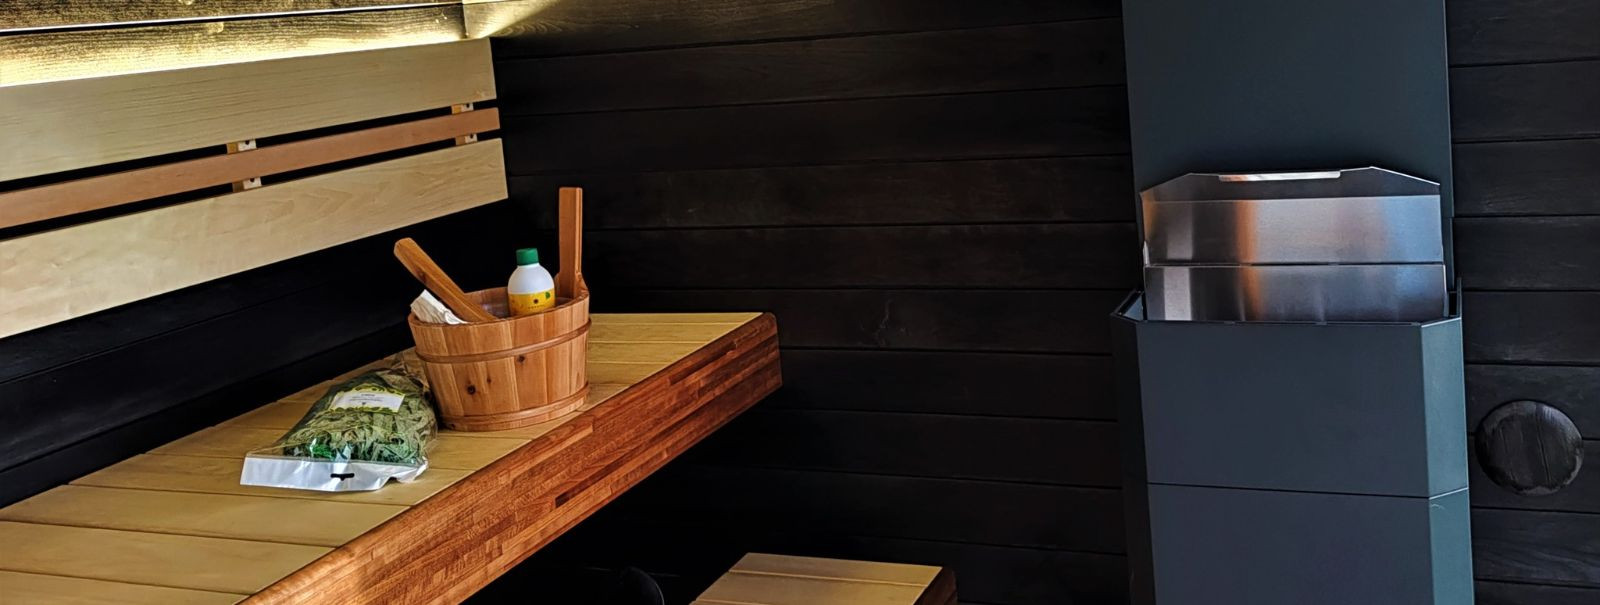 Õige meeleolu loomine saunas on rohkem kui lihtsalt temperatuur ja niiskus. See on rahulikkuse ja emotsionaalse heaolu esilekutsumine. Sauna õhkkond võib olulis